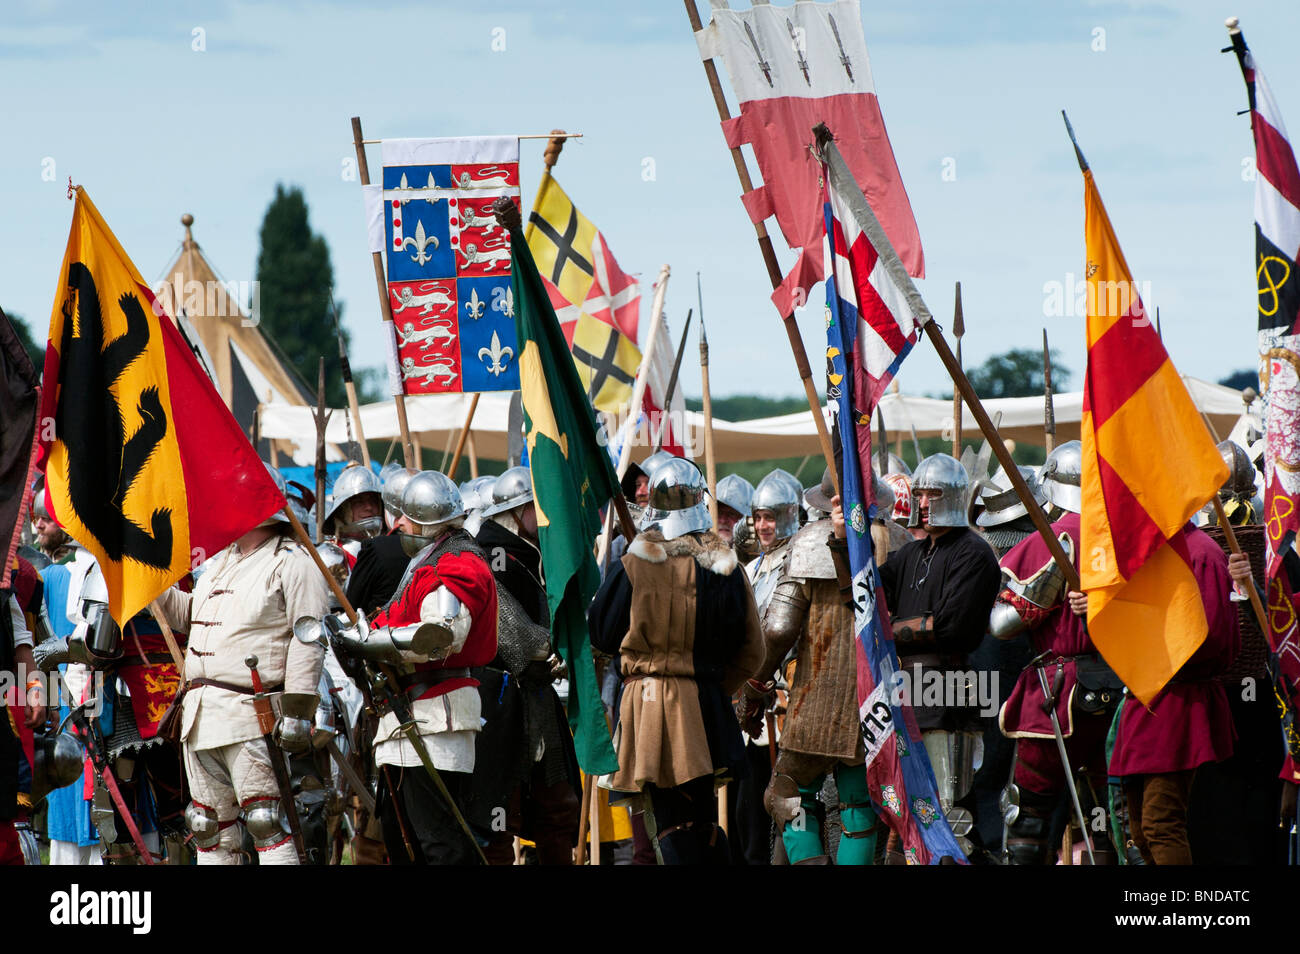 Cavalieri in armatura la preparazione per la battaglia presso la rievocazione della battaglia di Tewkesbury. Festa Medievale 2010. Tewkesbury, nel Gloucestershire, Inghilterra Foto Stock